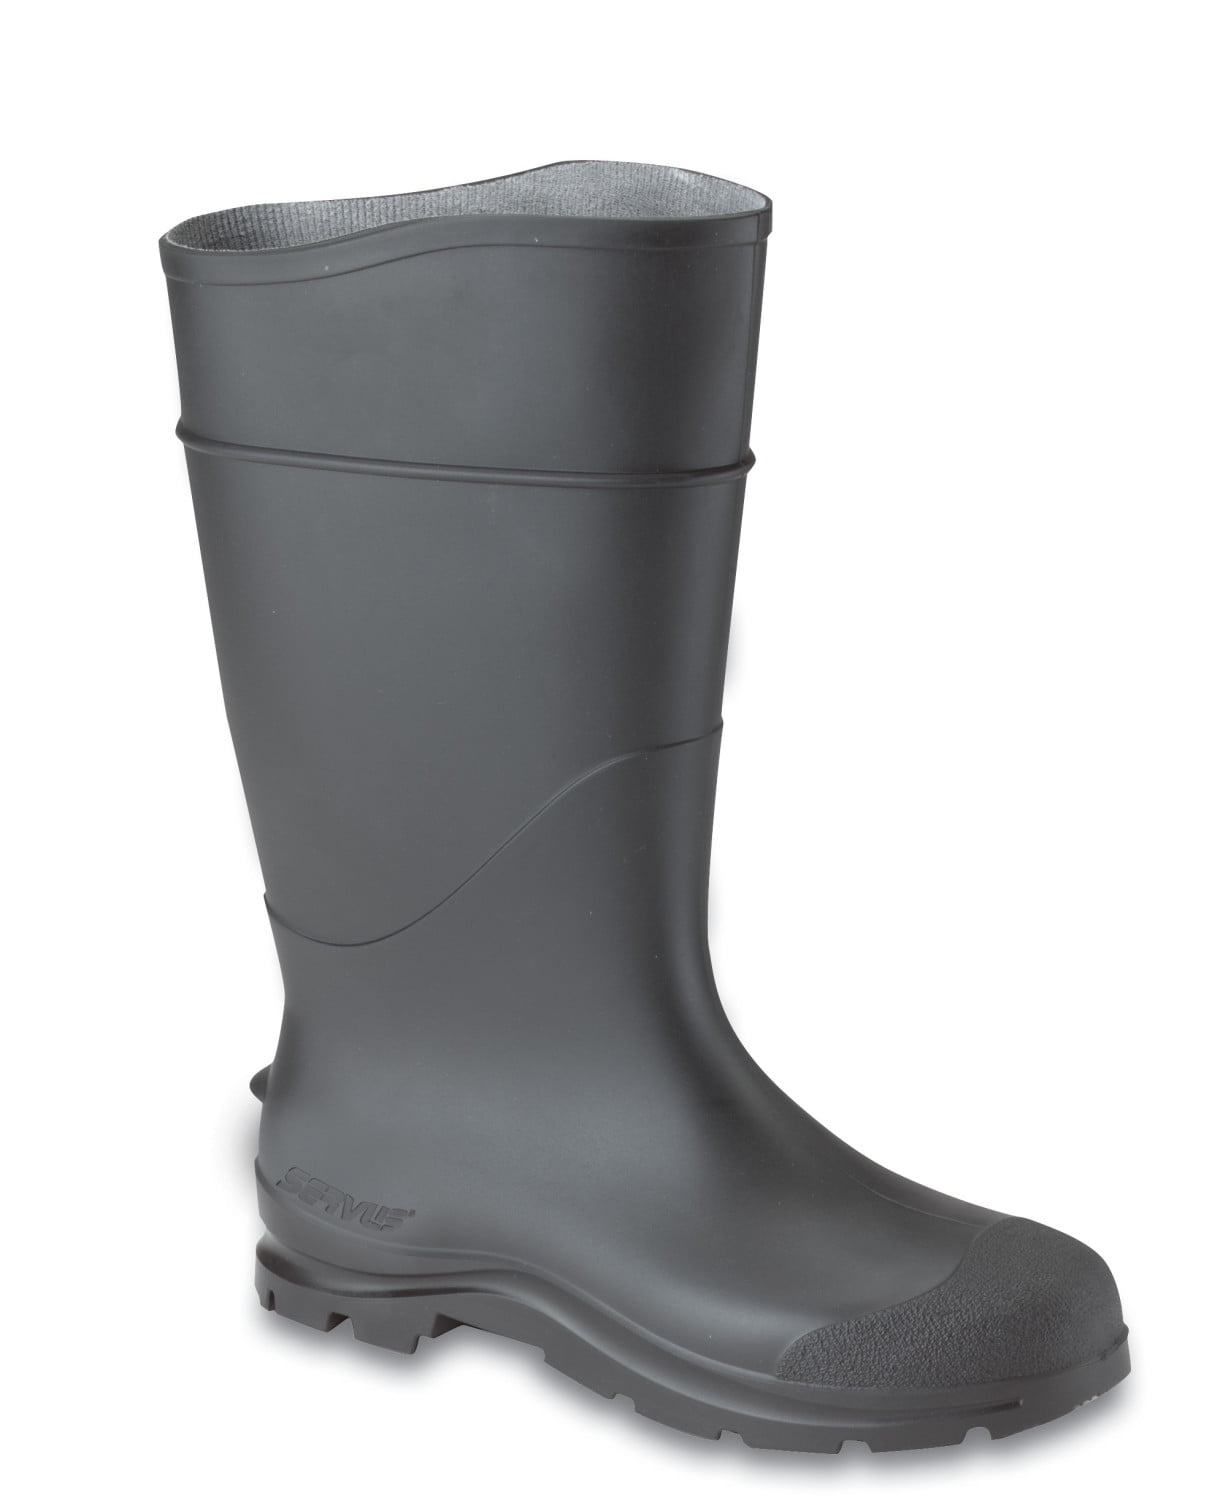 Daarom ongezond Veroveraar Servus Comfort Technology 14" PVC Steel Toe Men's Work Boots Size 7(M) -  Walmart.com